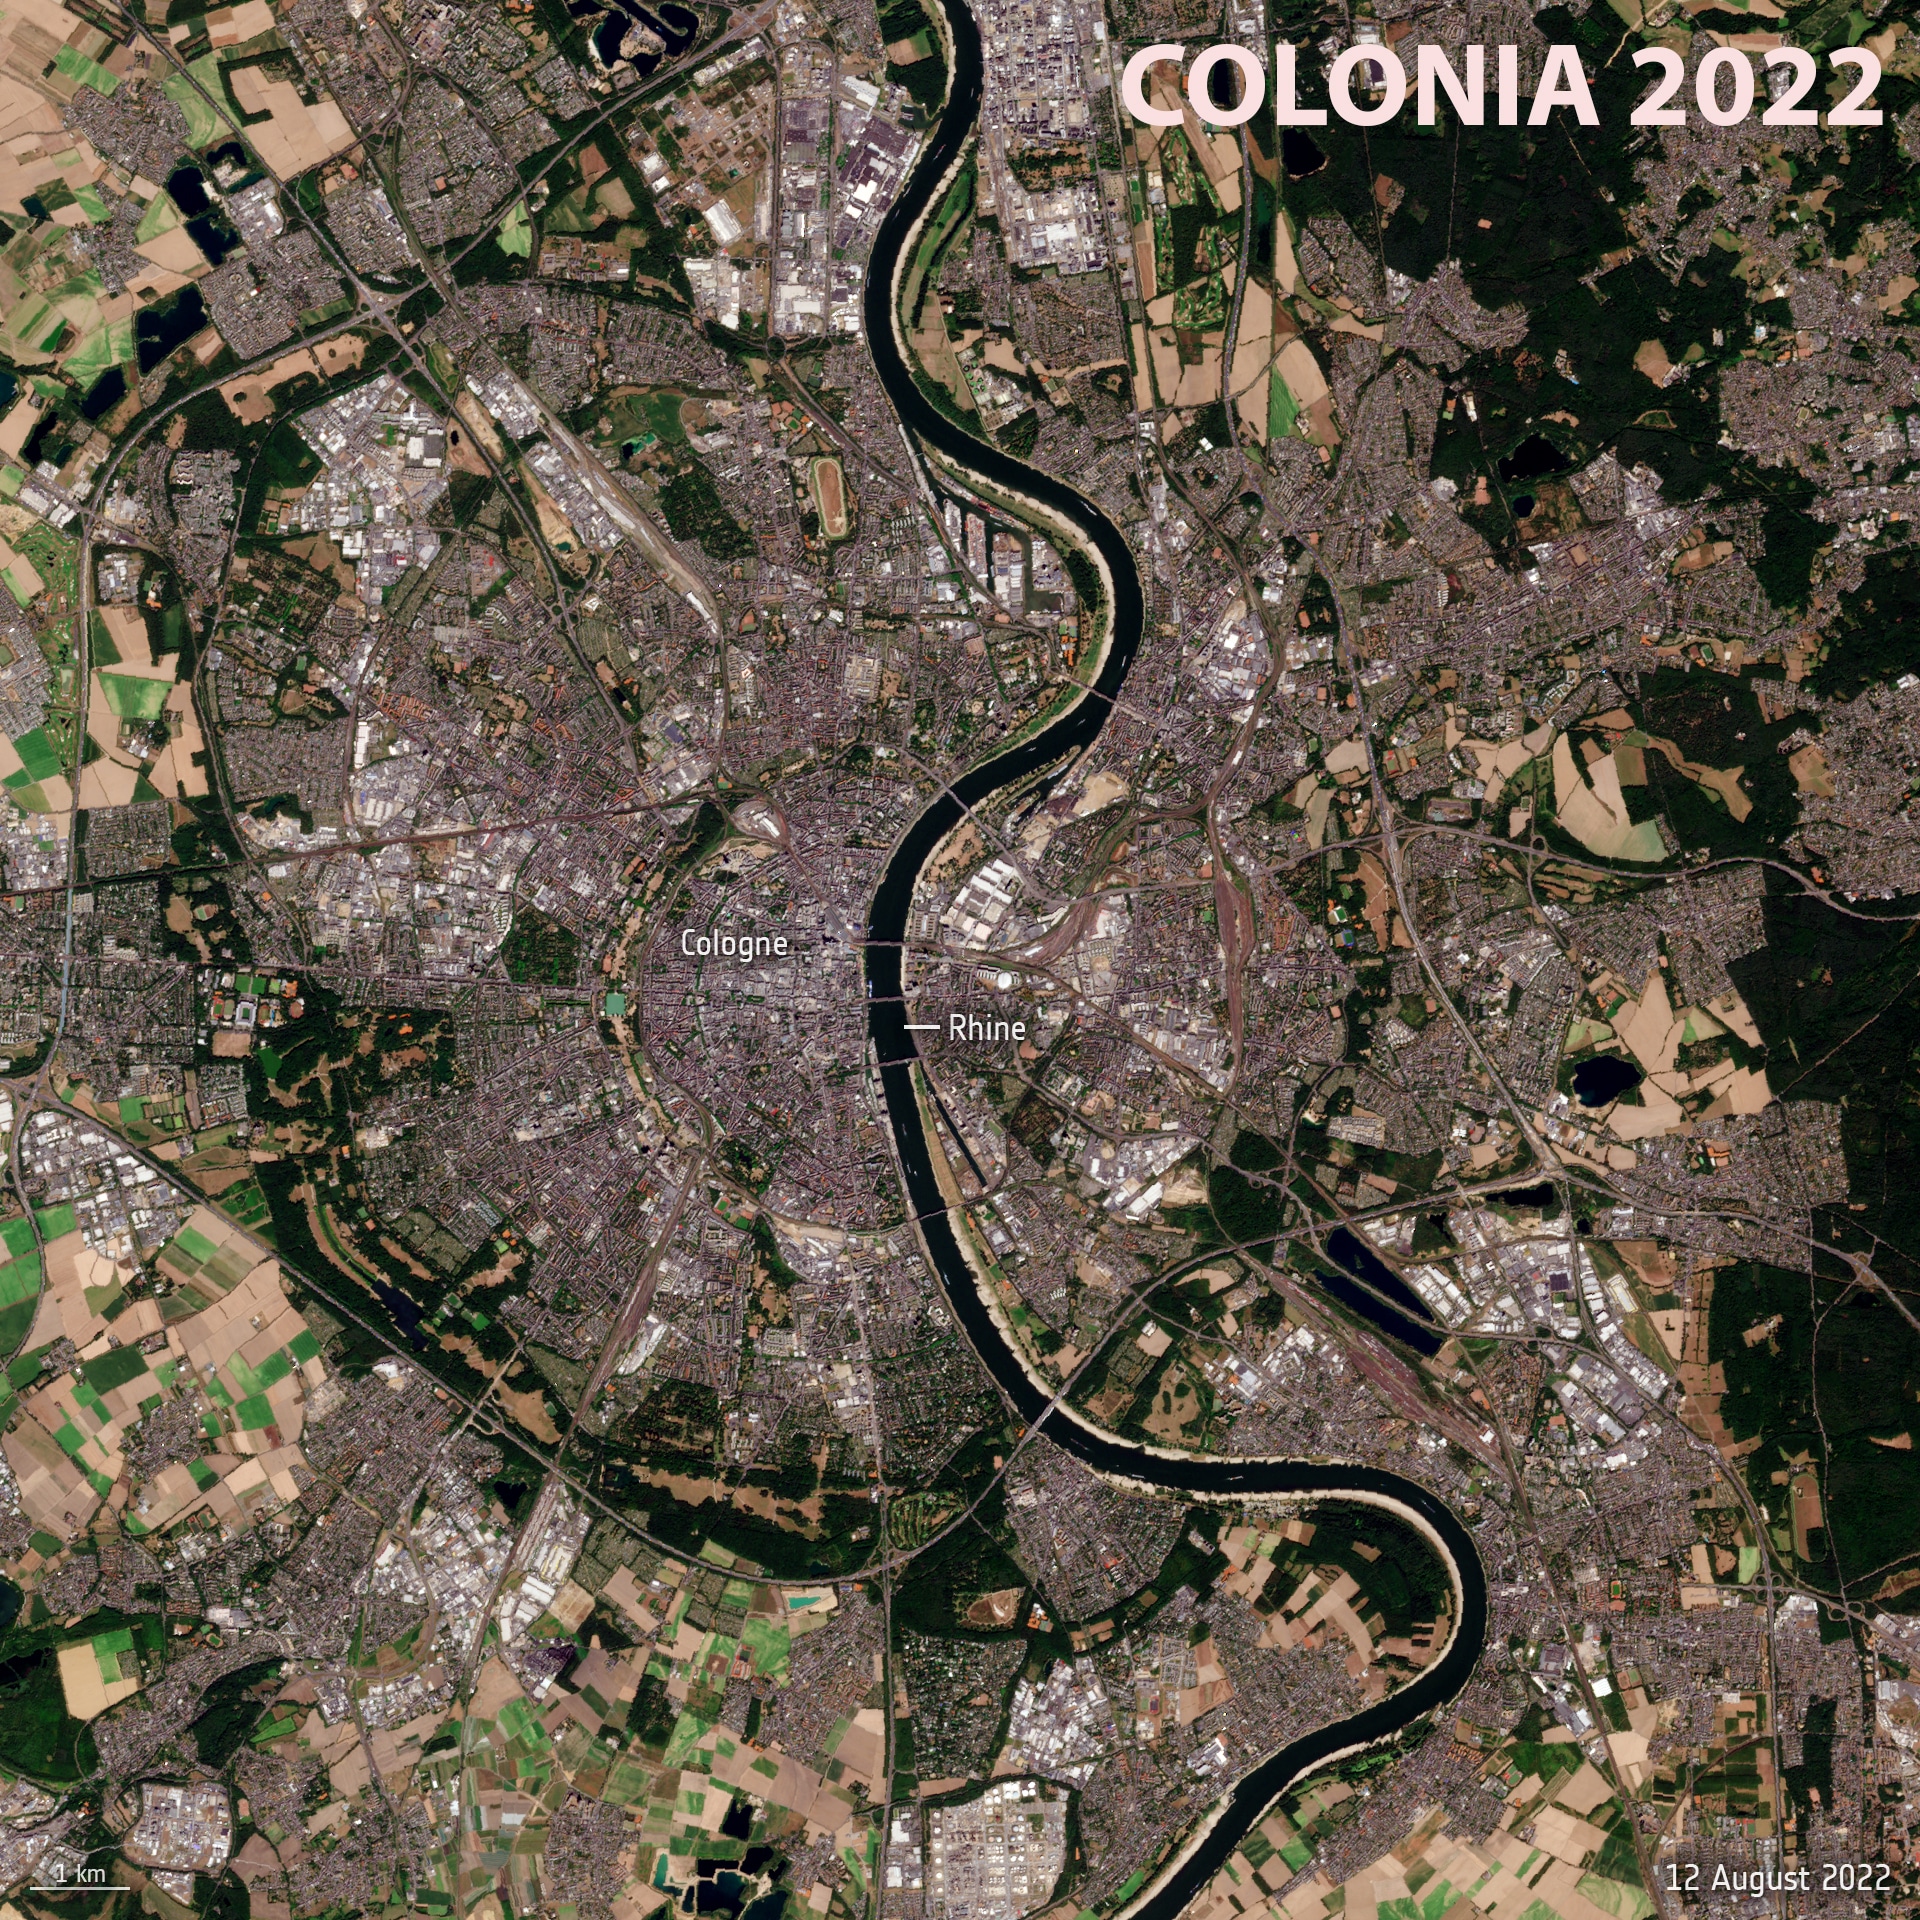 Río Rin a a paso por Colonia en agosto el 25 de agosto de 2022.